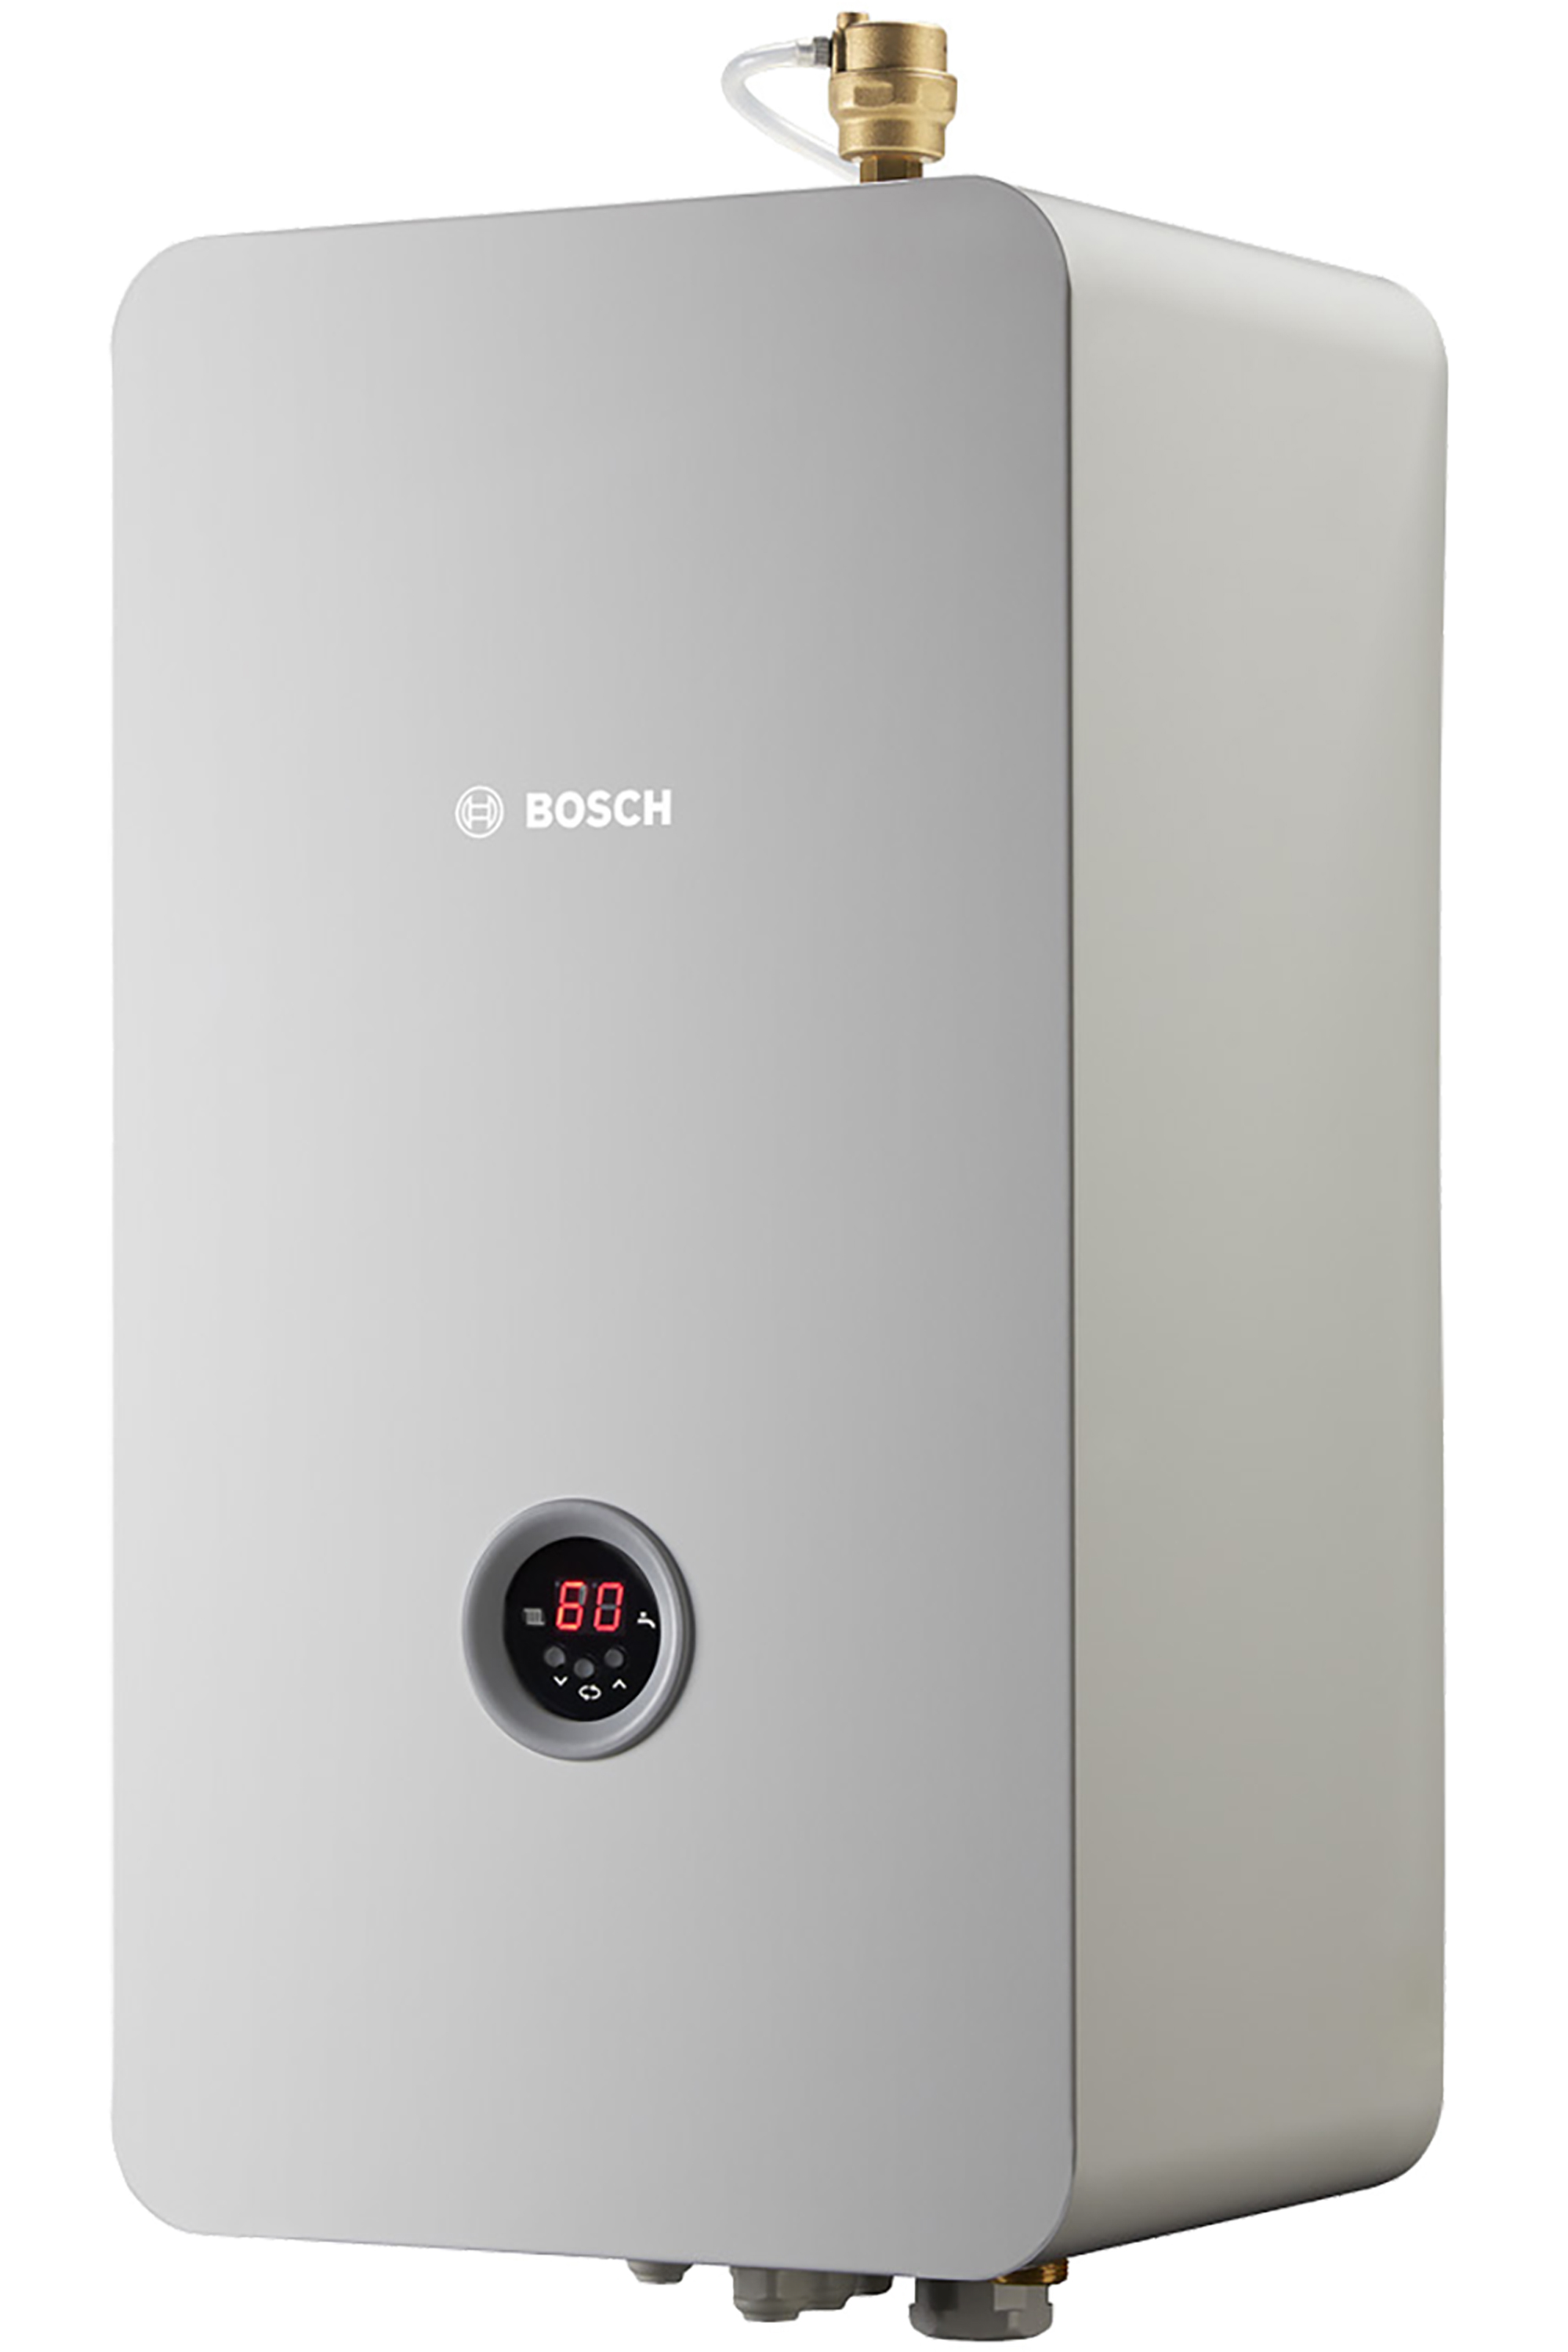 Купить электрокотел bosch однофазный на 220 вольт Bosch Heat 3500 9 в Киеве